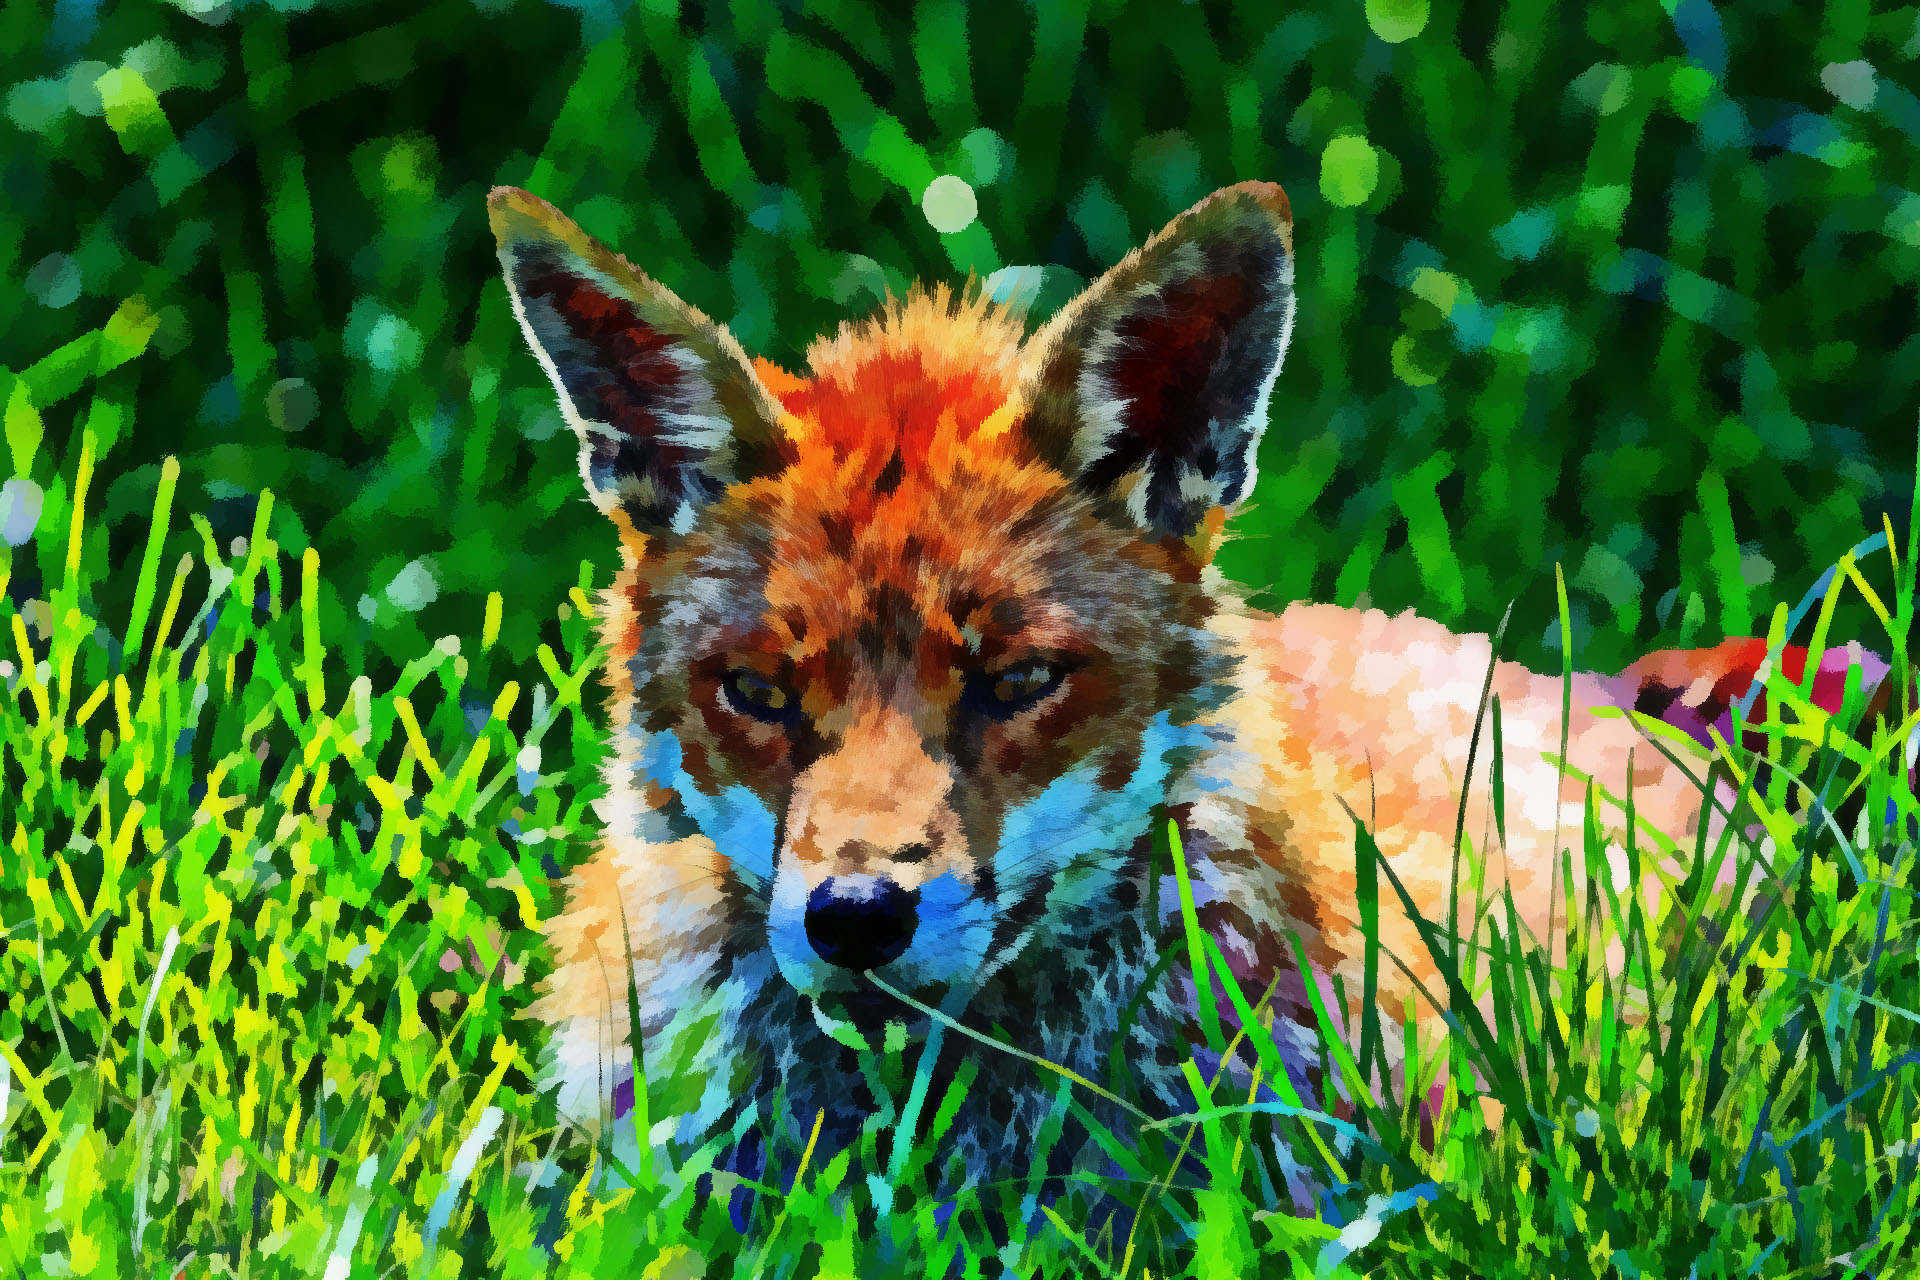 Fox Art by Susanlu4esm